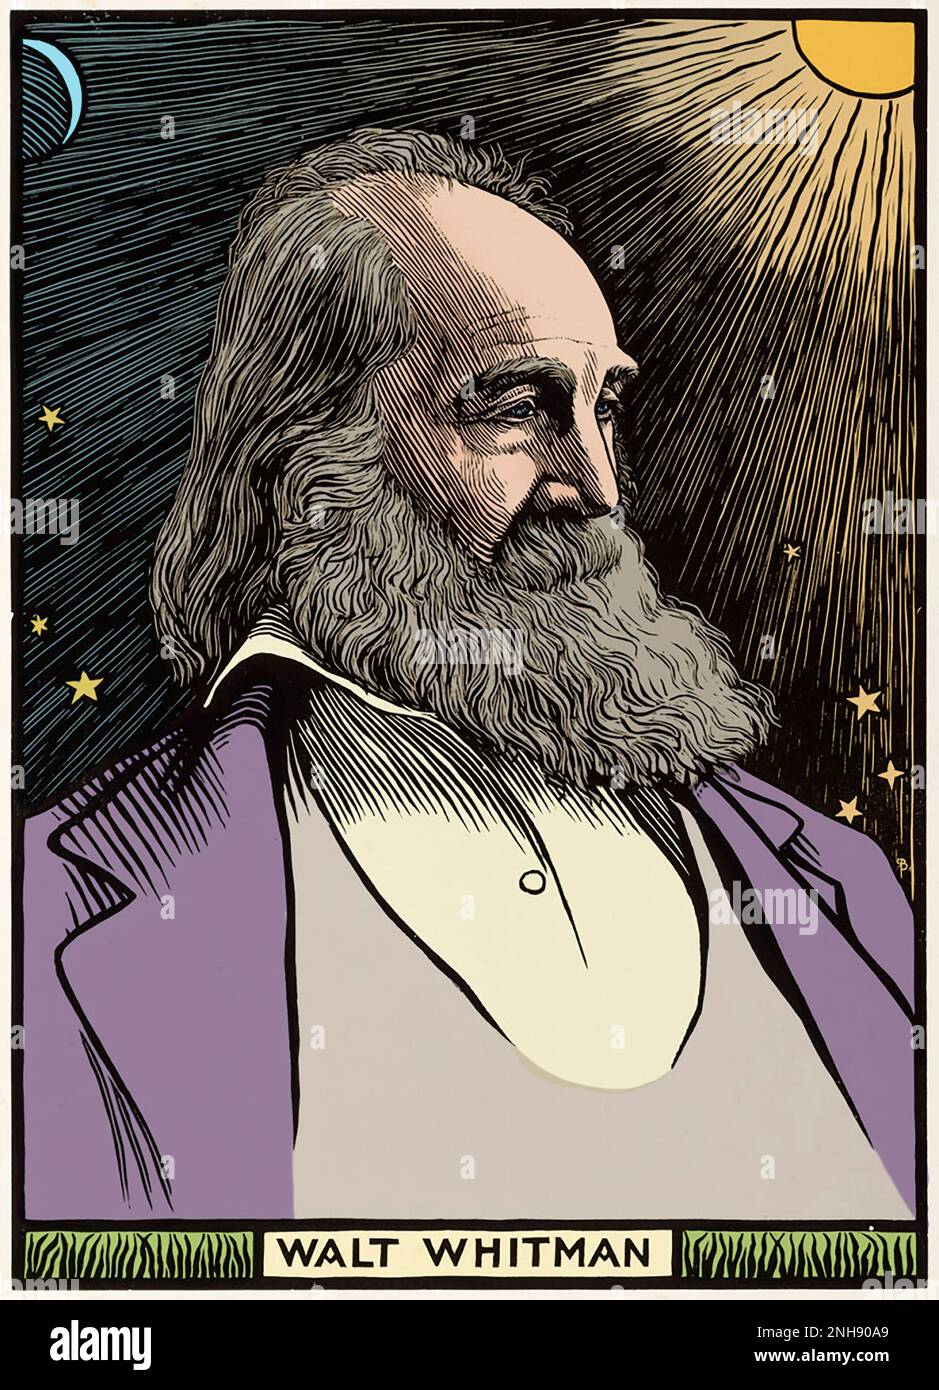 Walt Whitman (1819-1892), poète, essayiste et journaliste américain, célèbre pour sa collection de poésie de 1855 Leaves of Grass. Coupe de bois de Robert Bryden (1865-1939), artiste et sculpteur écossais, de 1899. Colorisé. Banque D'Images